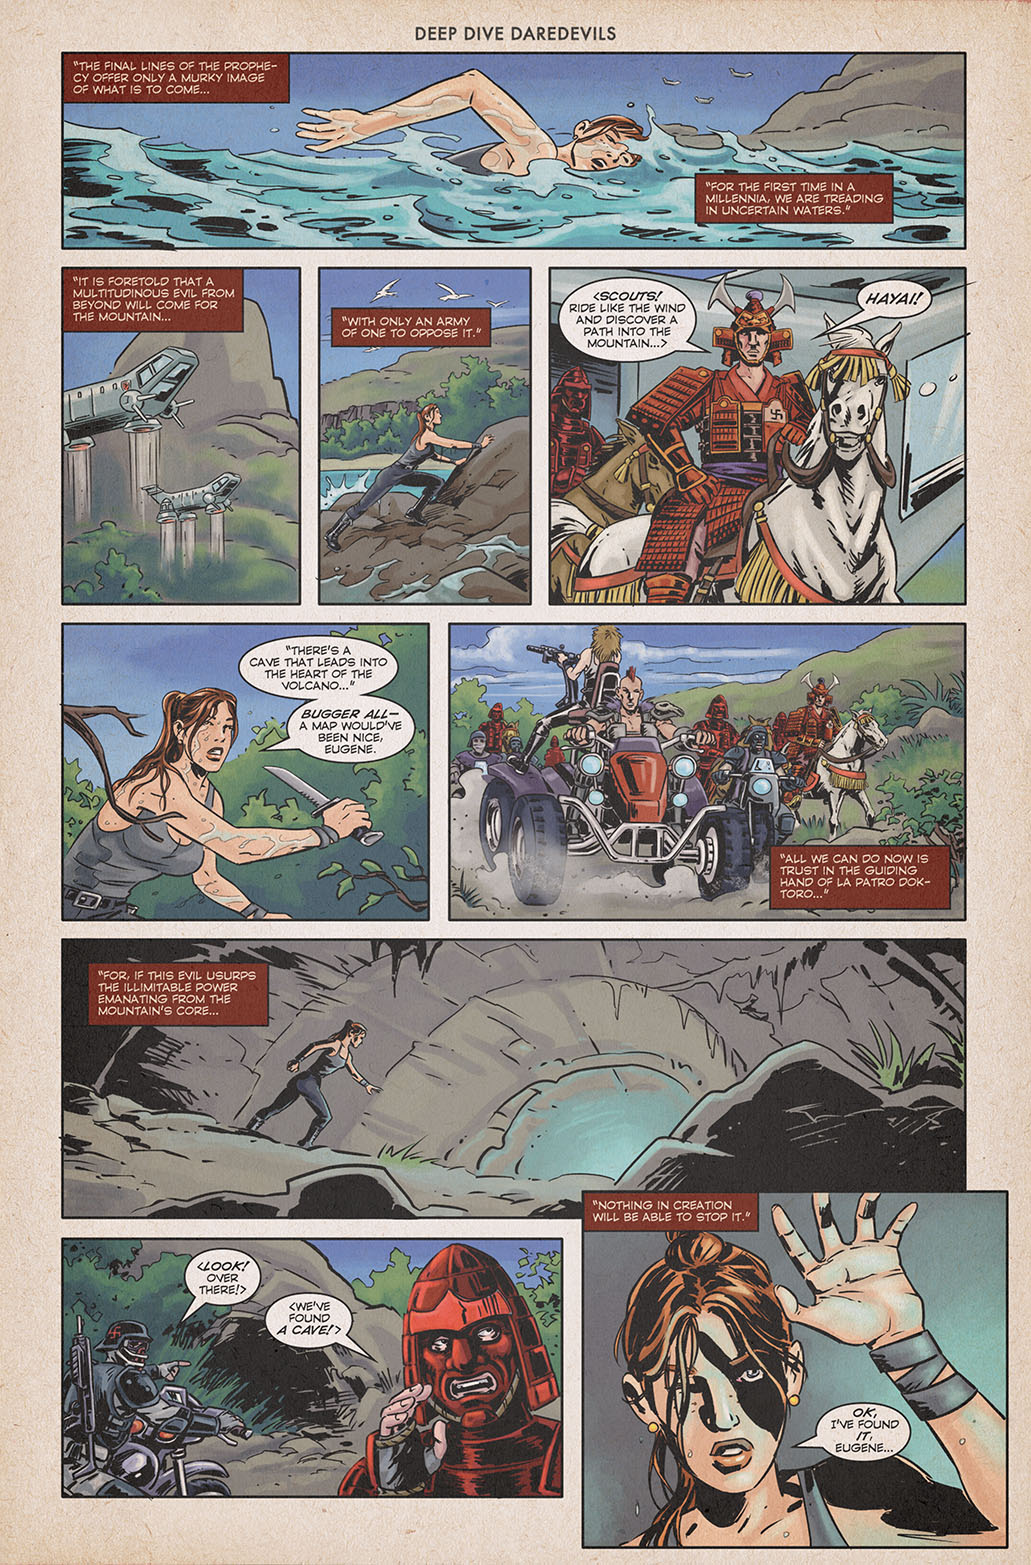 Beyond Familiar Shores 2 – Page 123